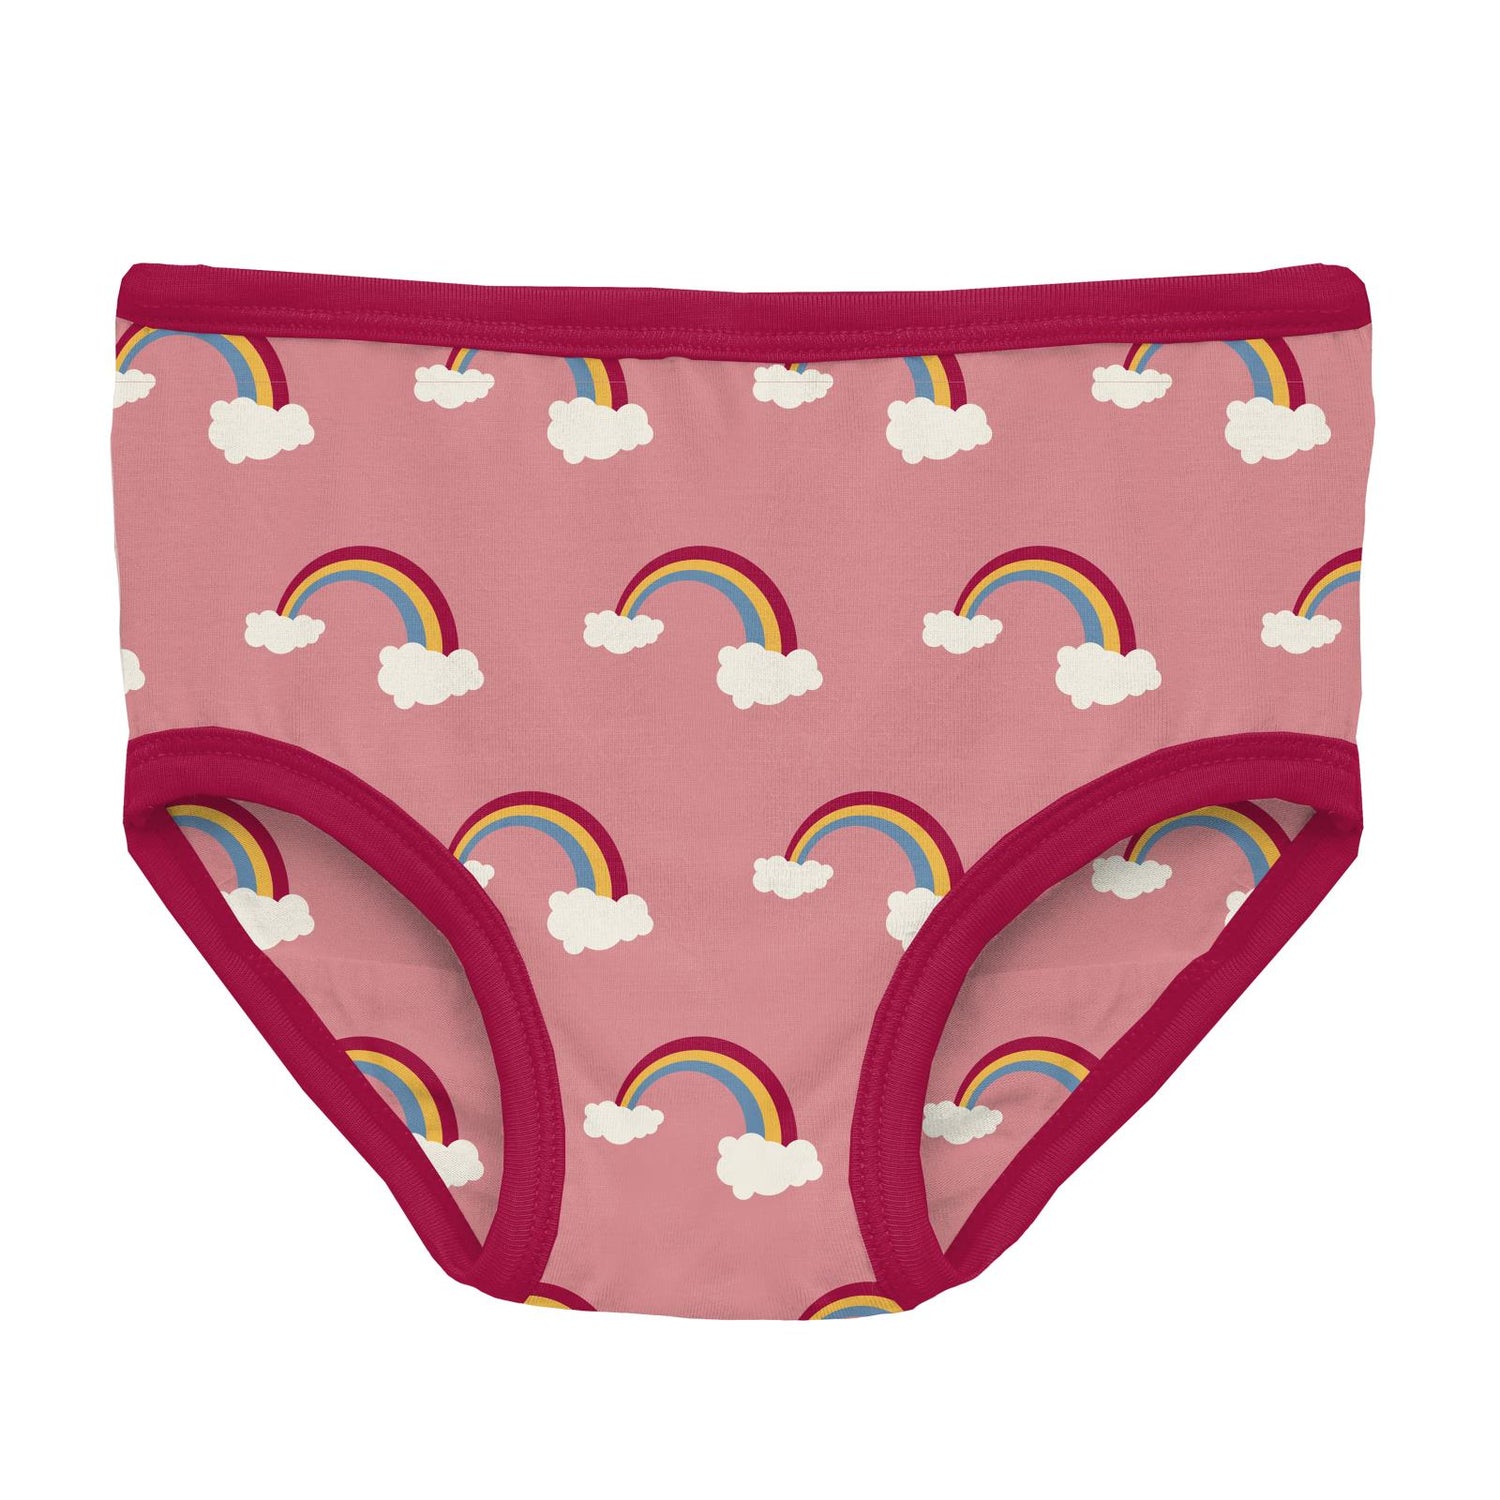 Print Girl's Underwear in Strawberry Rainbows